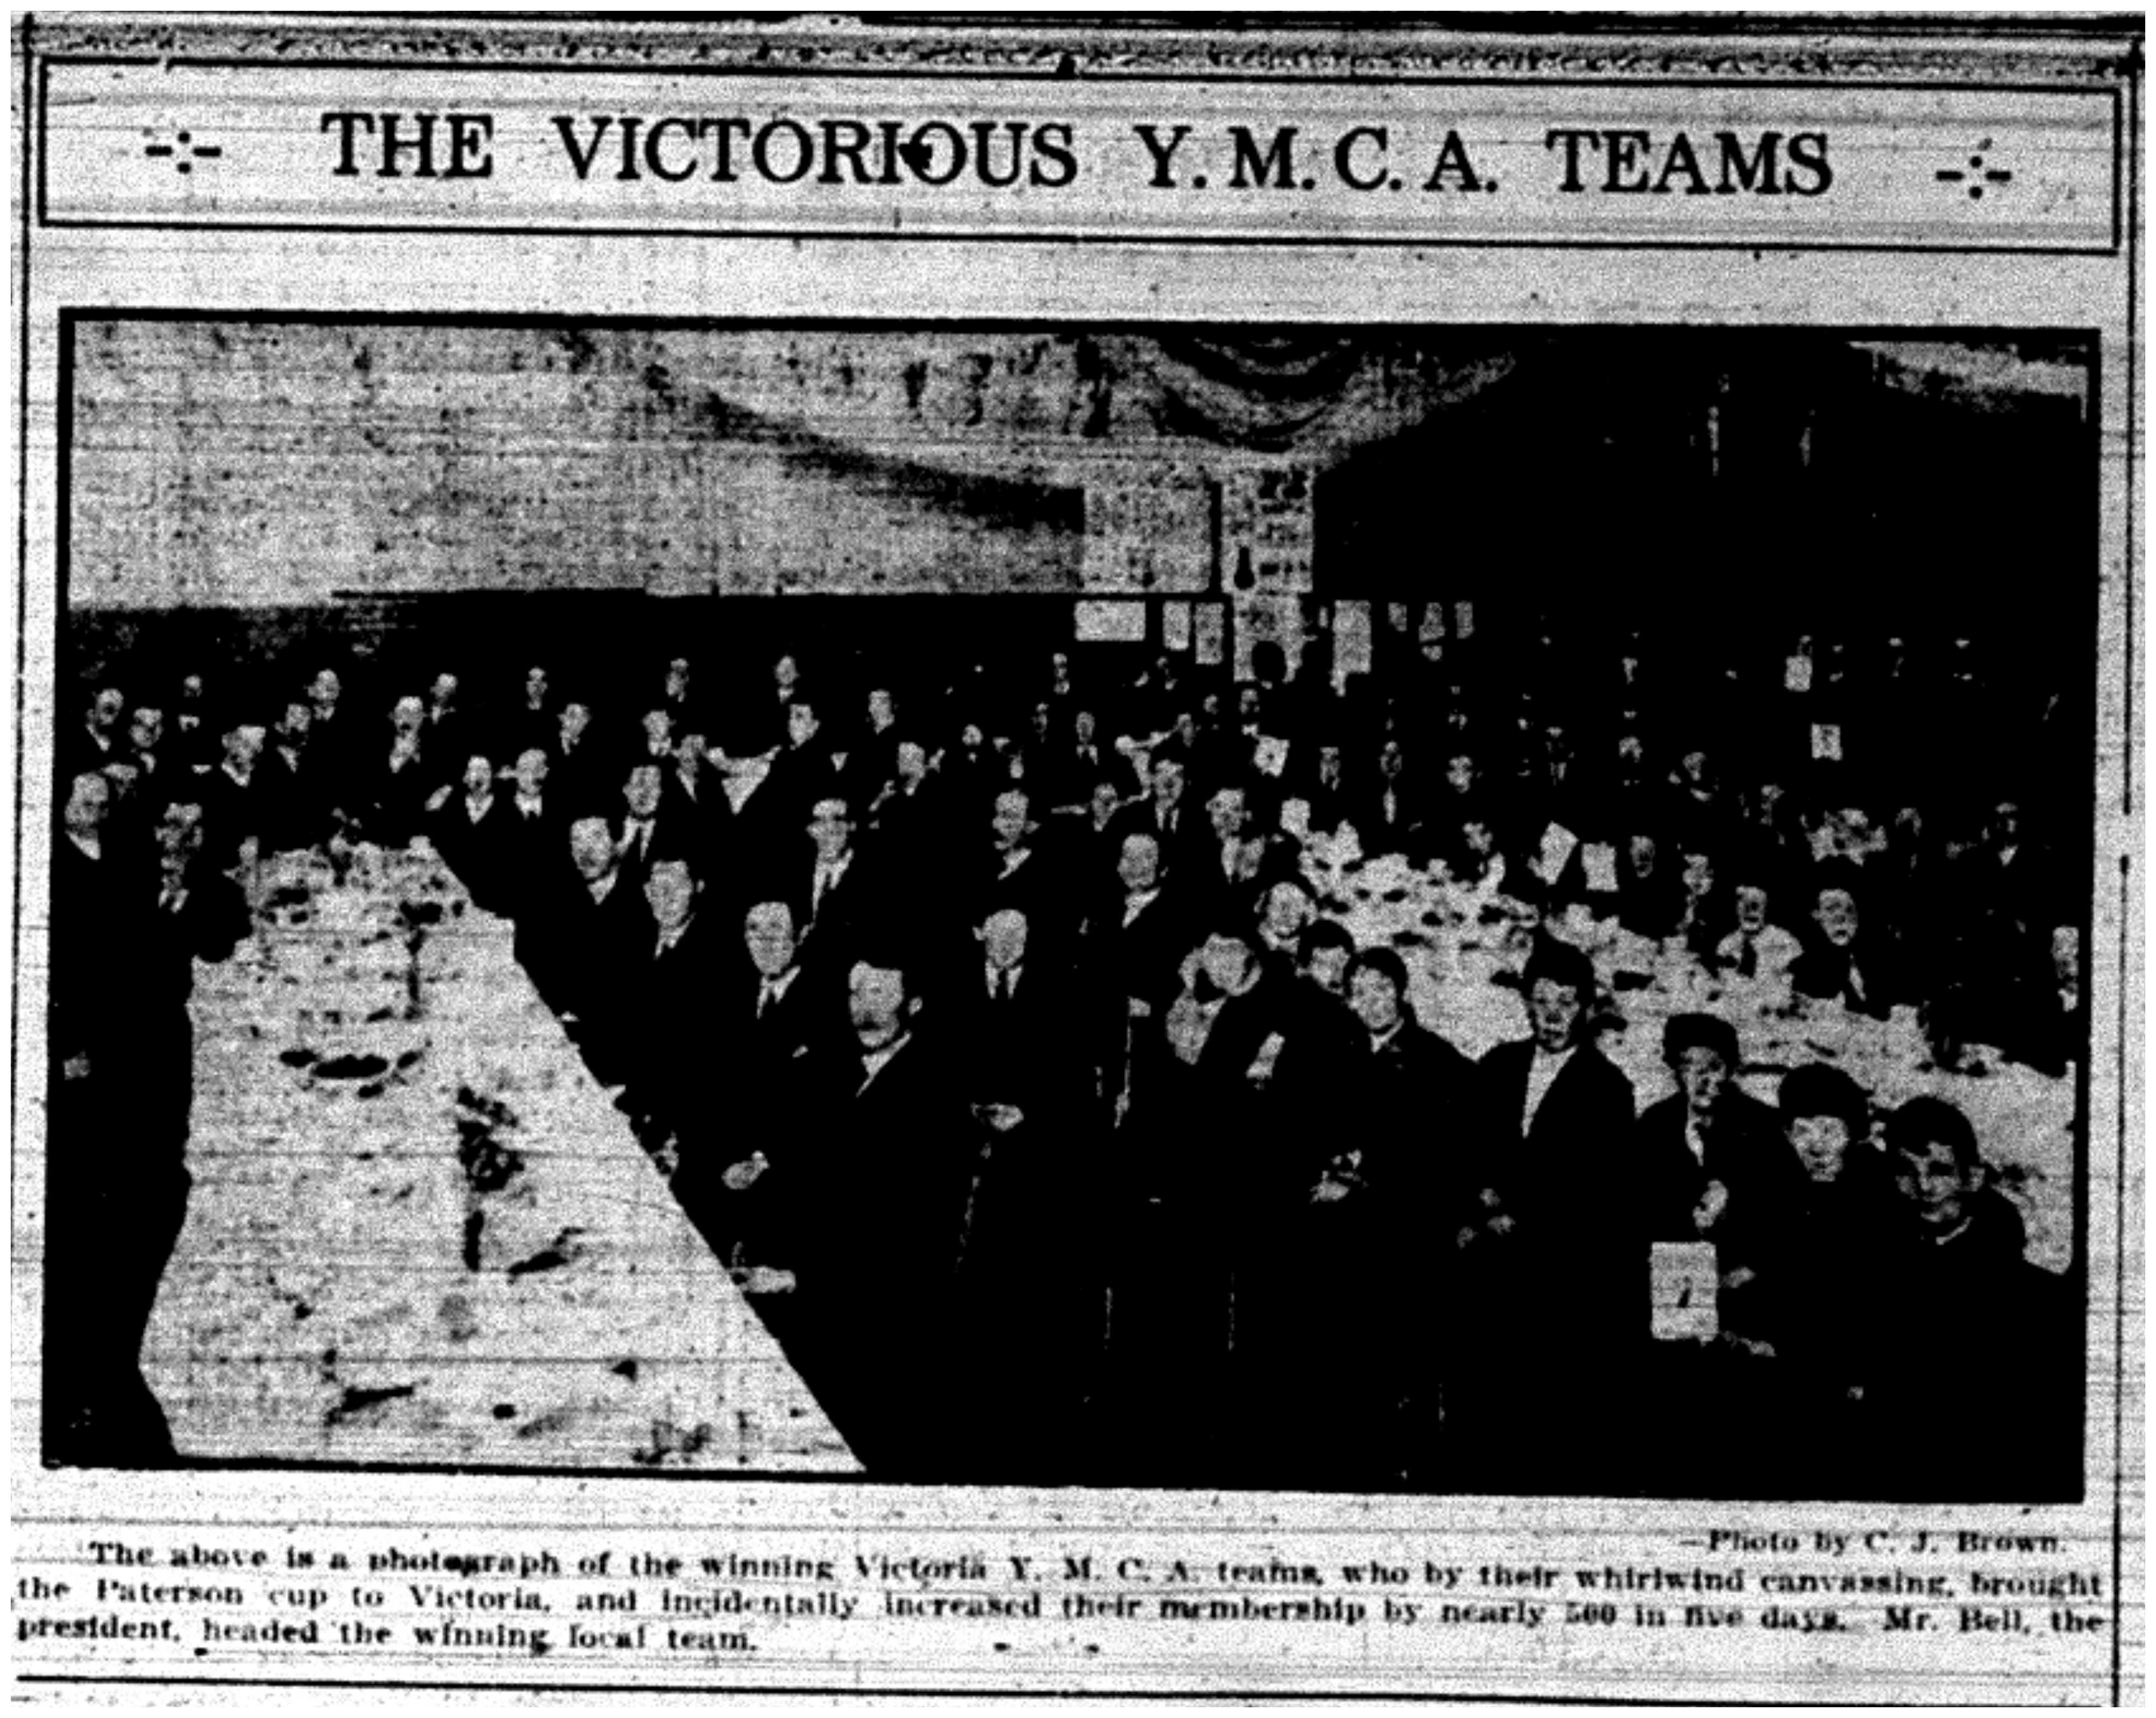 "The Victorious Y.M.C.A. Teams"